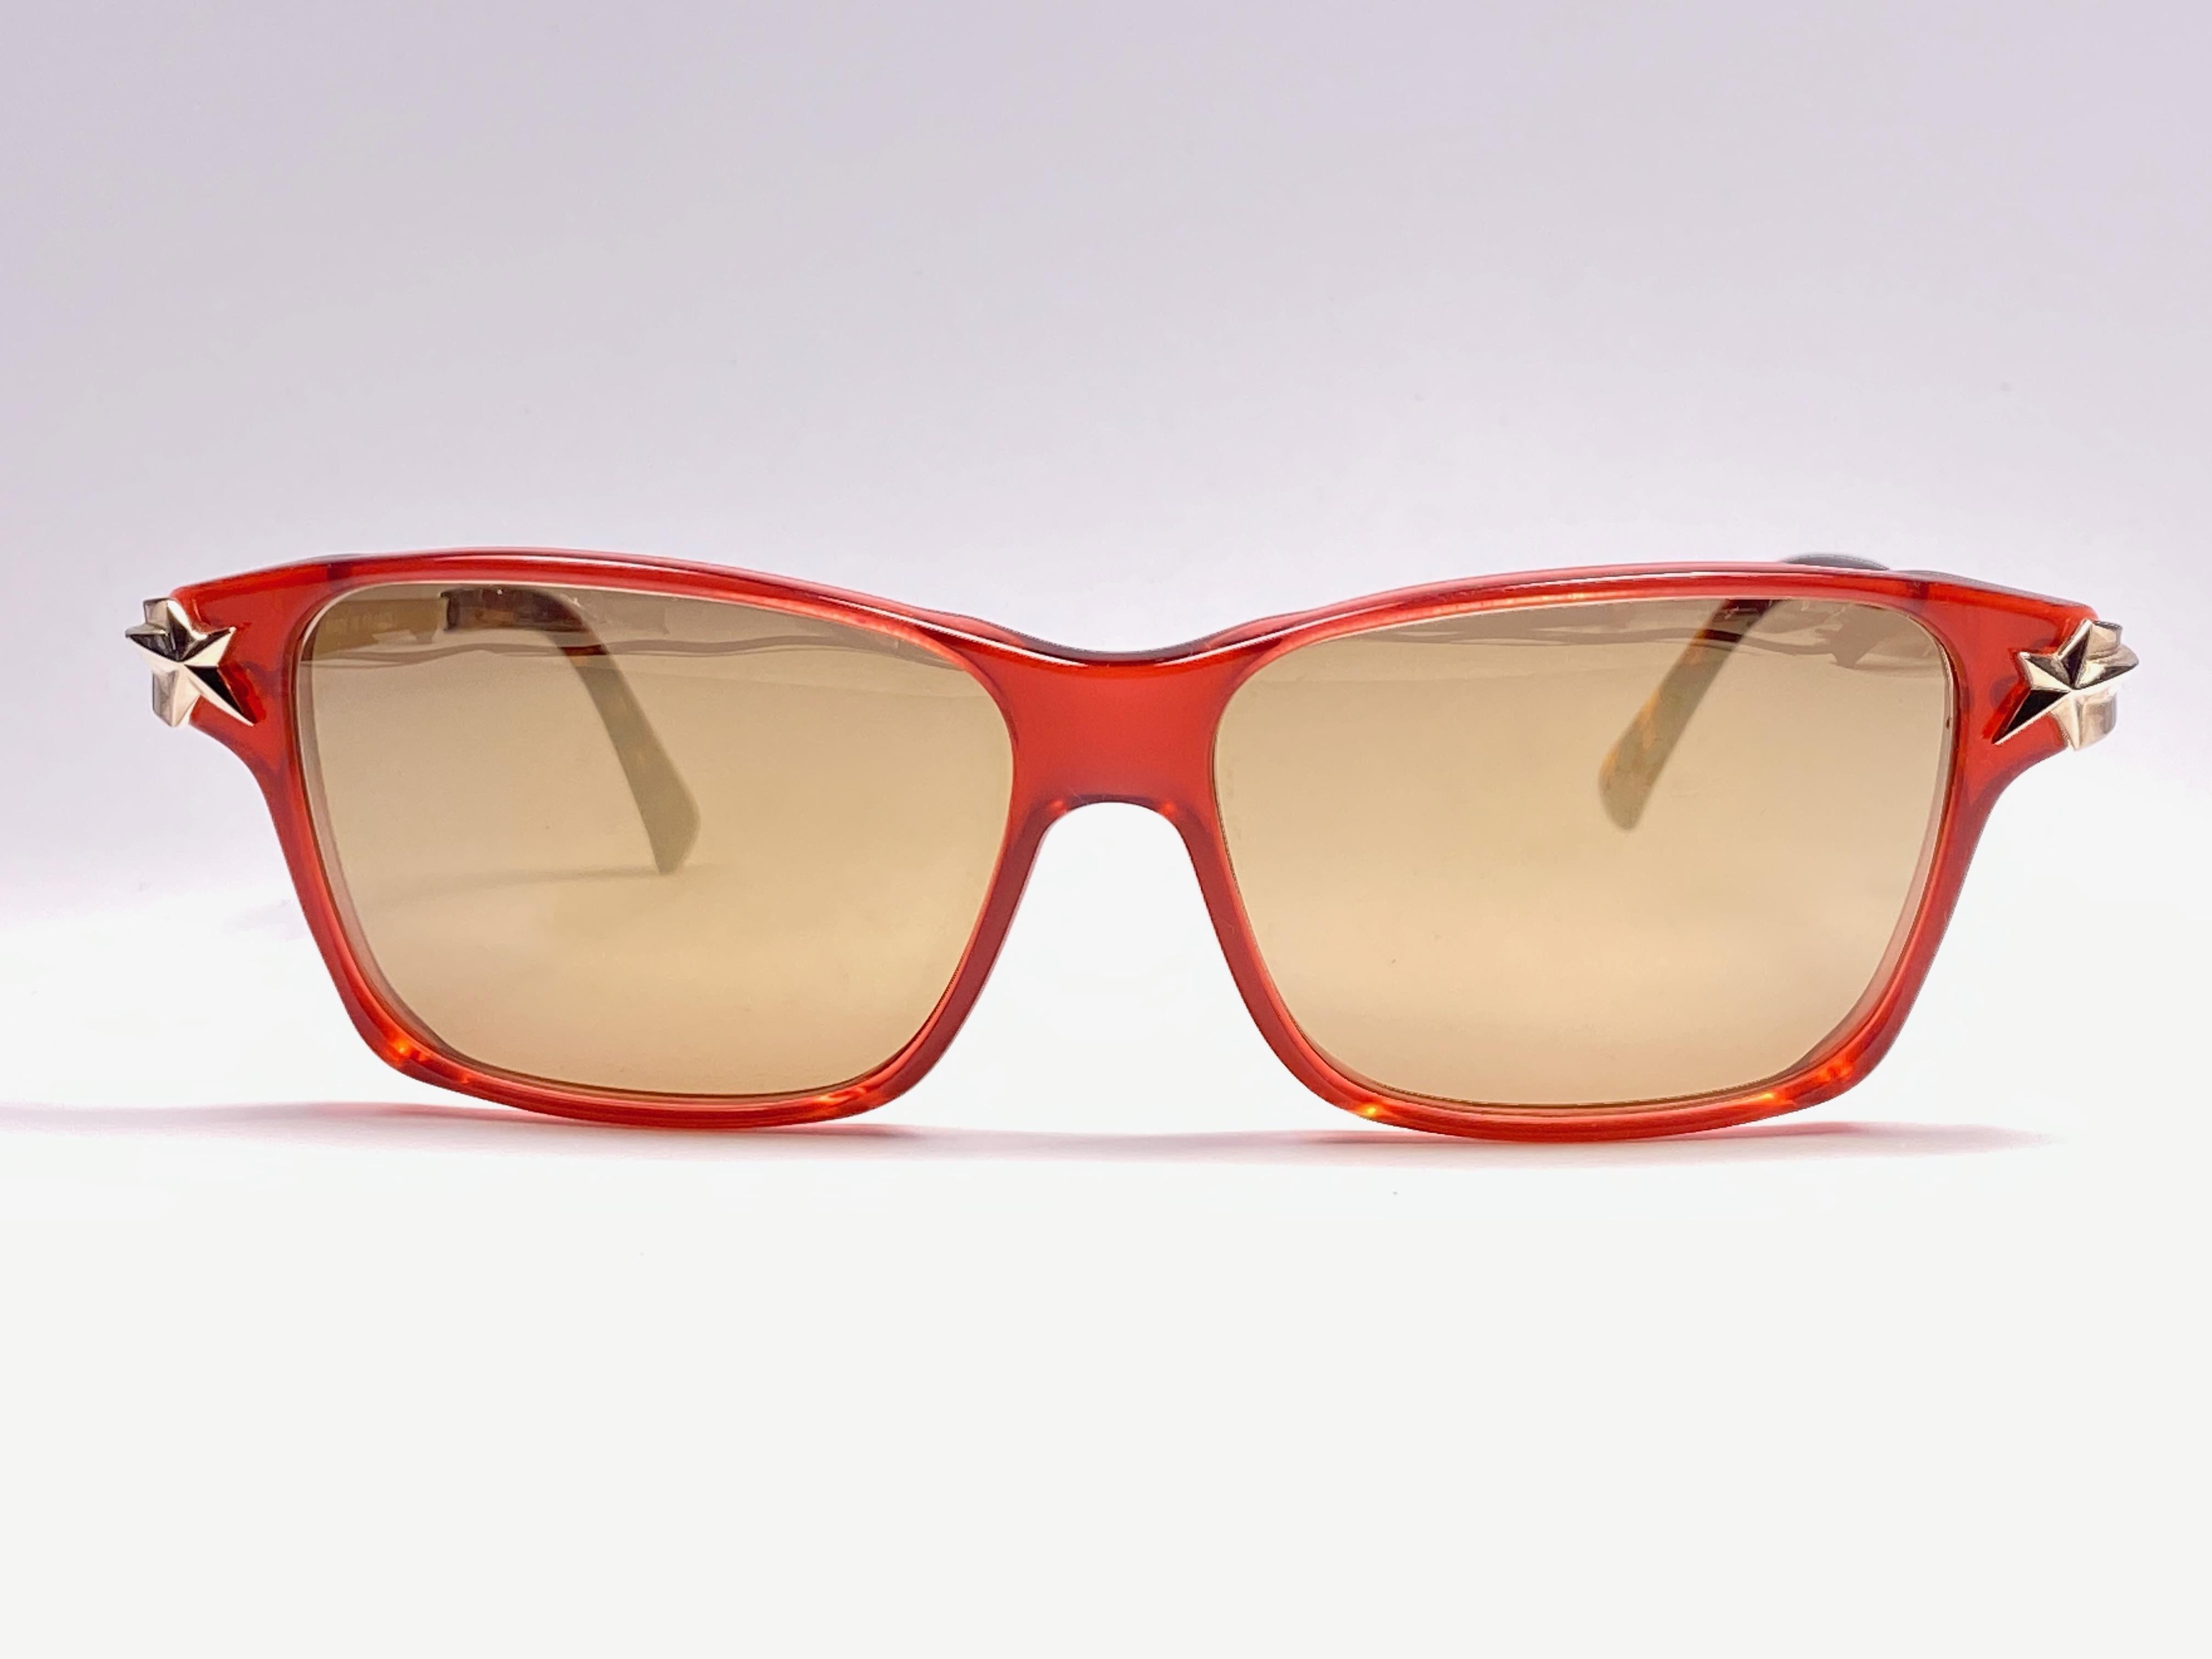 Super cool lunettes de soleil vintage THIERRY MUGLER des années 1980. Monture rouge translucide avec des verres miroirs dorés.

Cette paire est une déclaration de style. La pièce peut présenter des signes mineurs d'usure dus au stockage.

Une